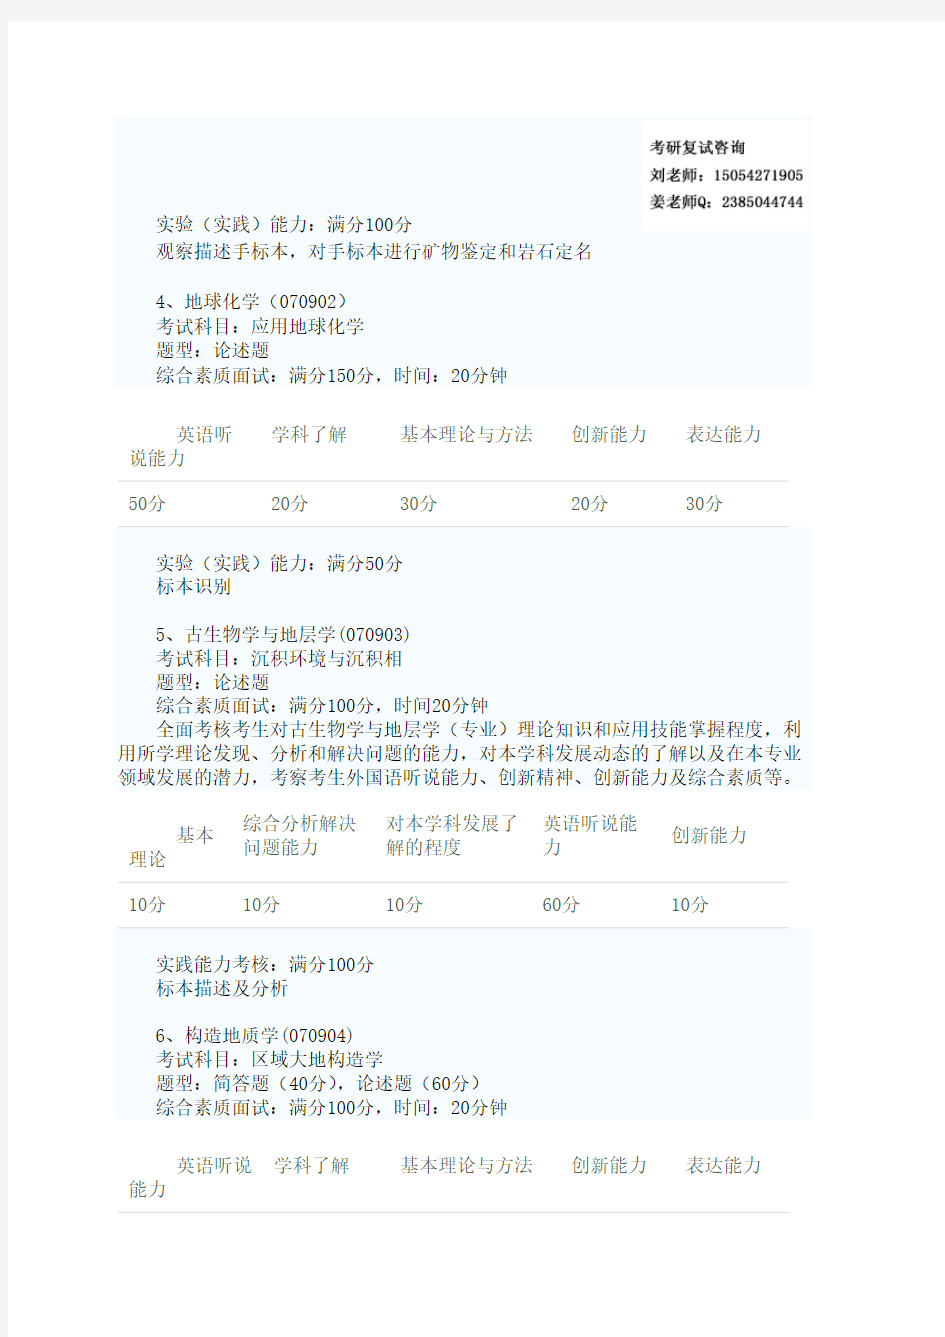 中国地质大学考研复试内容 复试参考书目 复试预备 复试资料